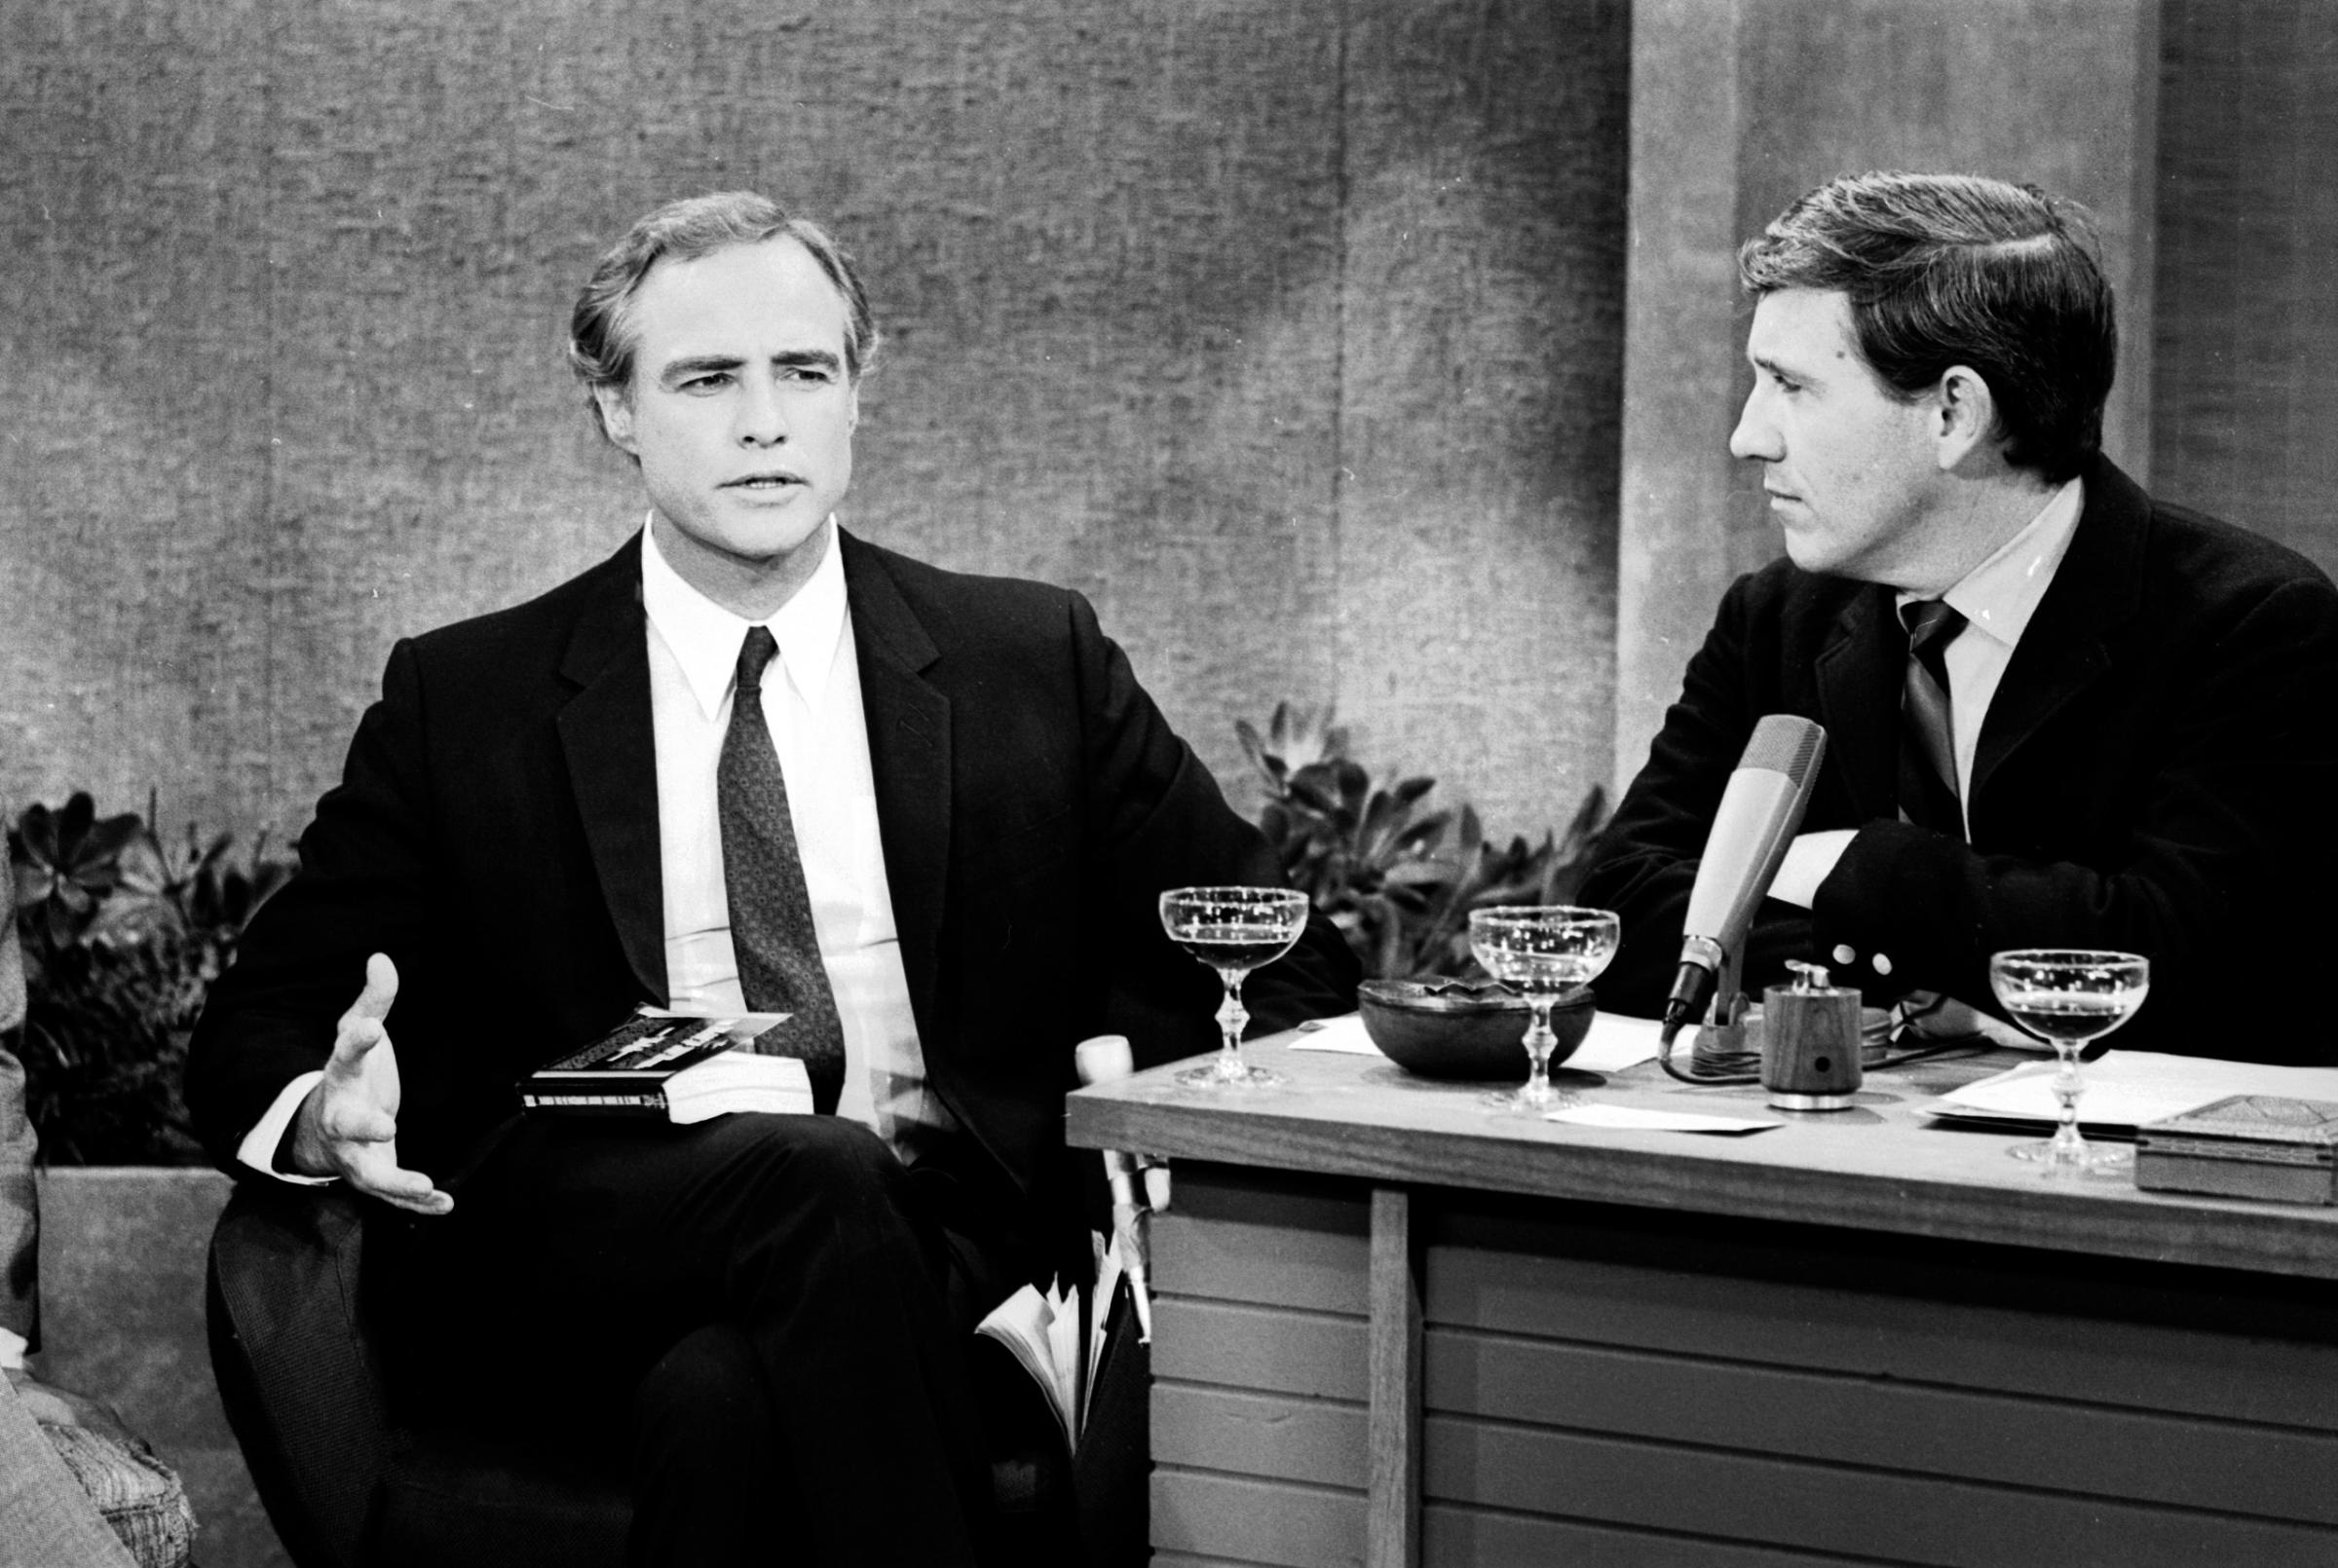 TV talk show host Merv Griffin (R) interviewing actor Marlon Brando, 1968.